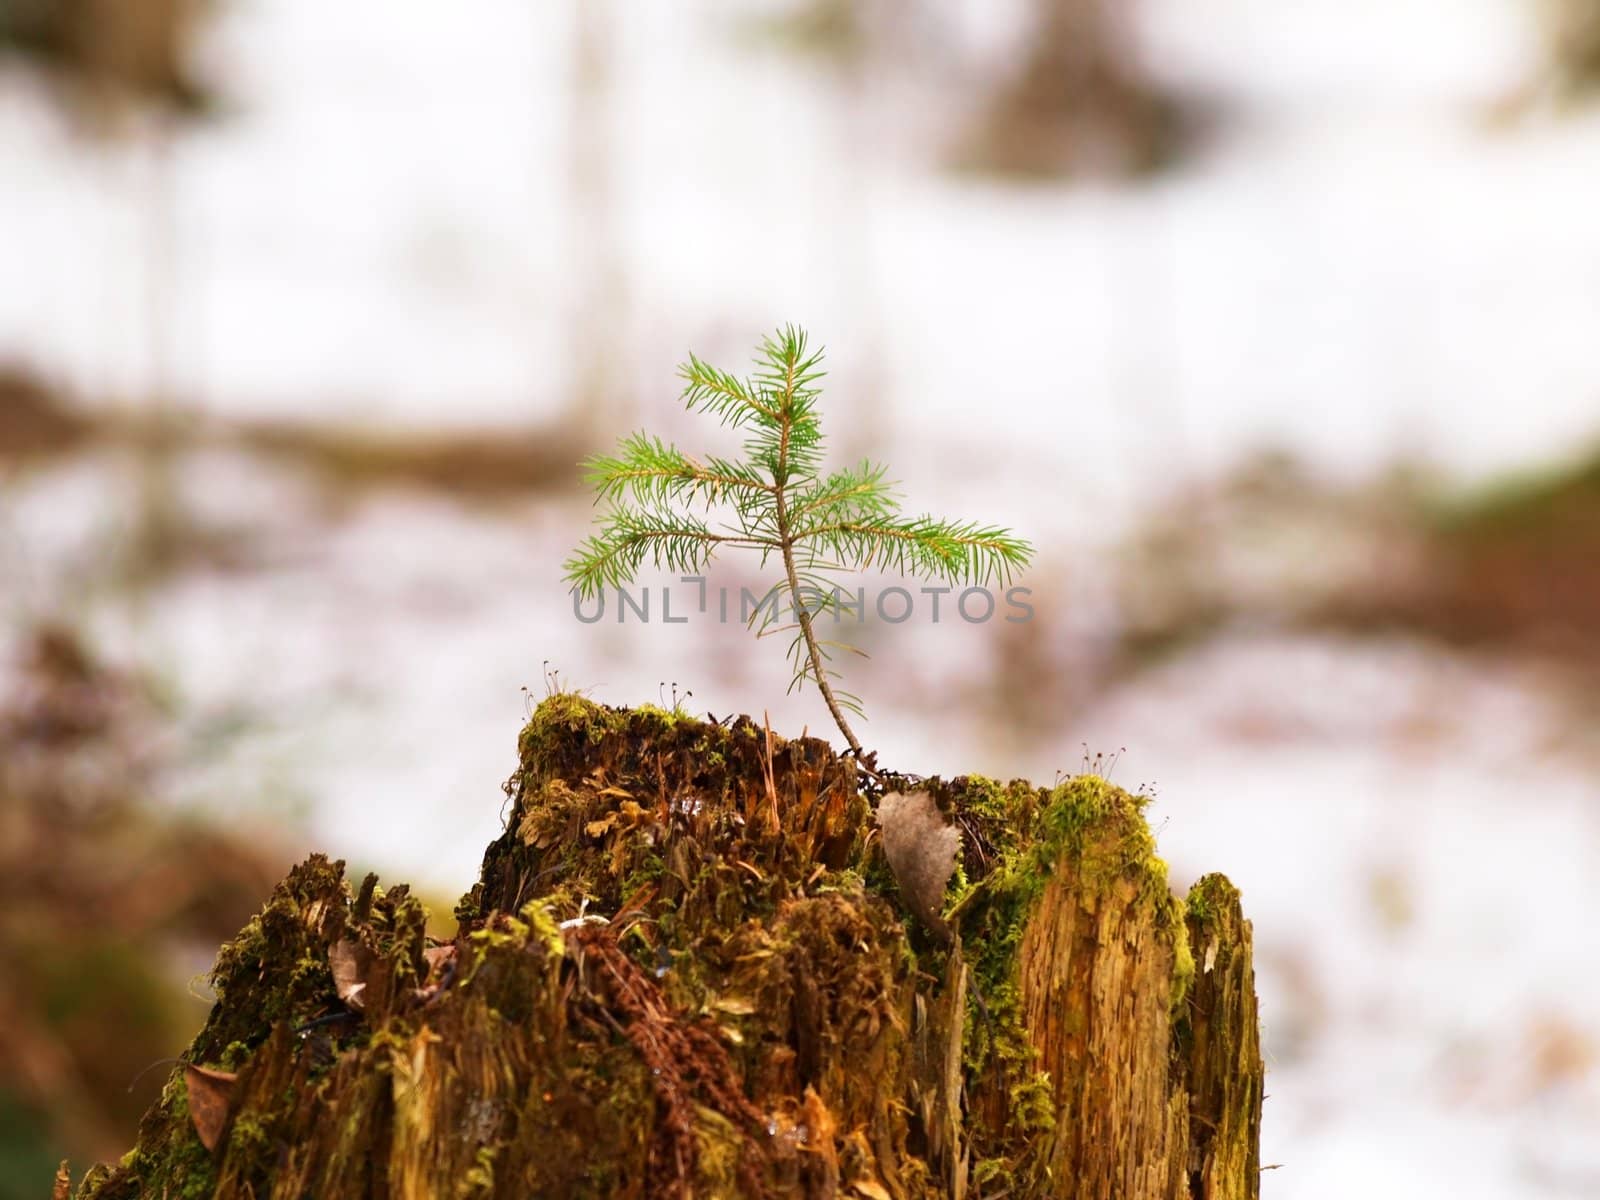 Spruce tree by Arvebettum